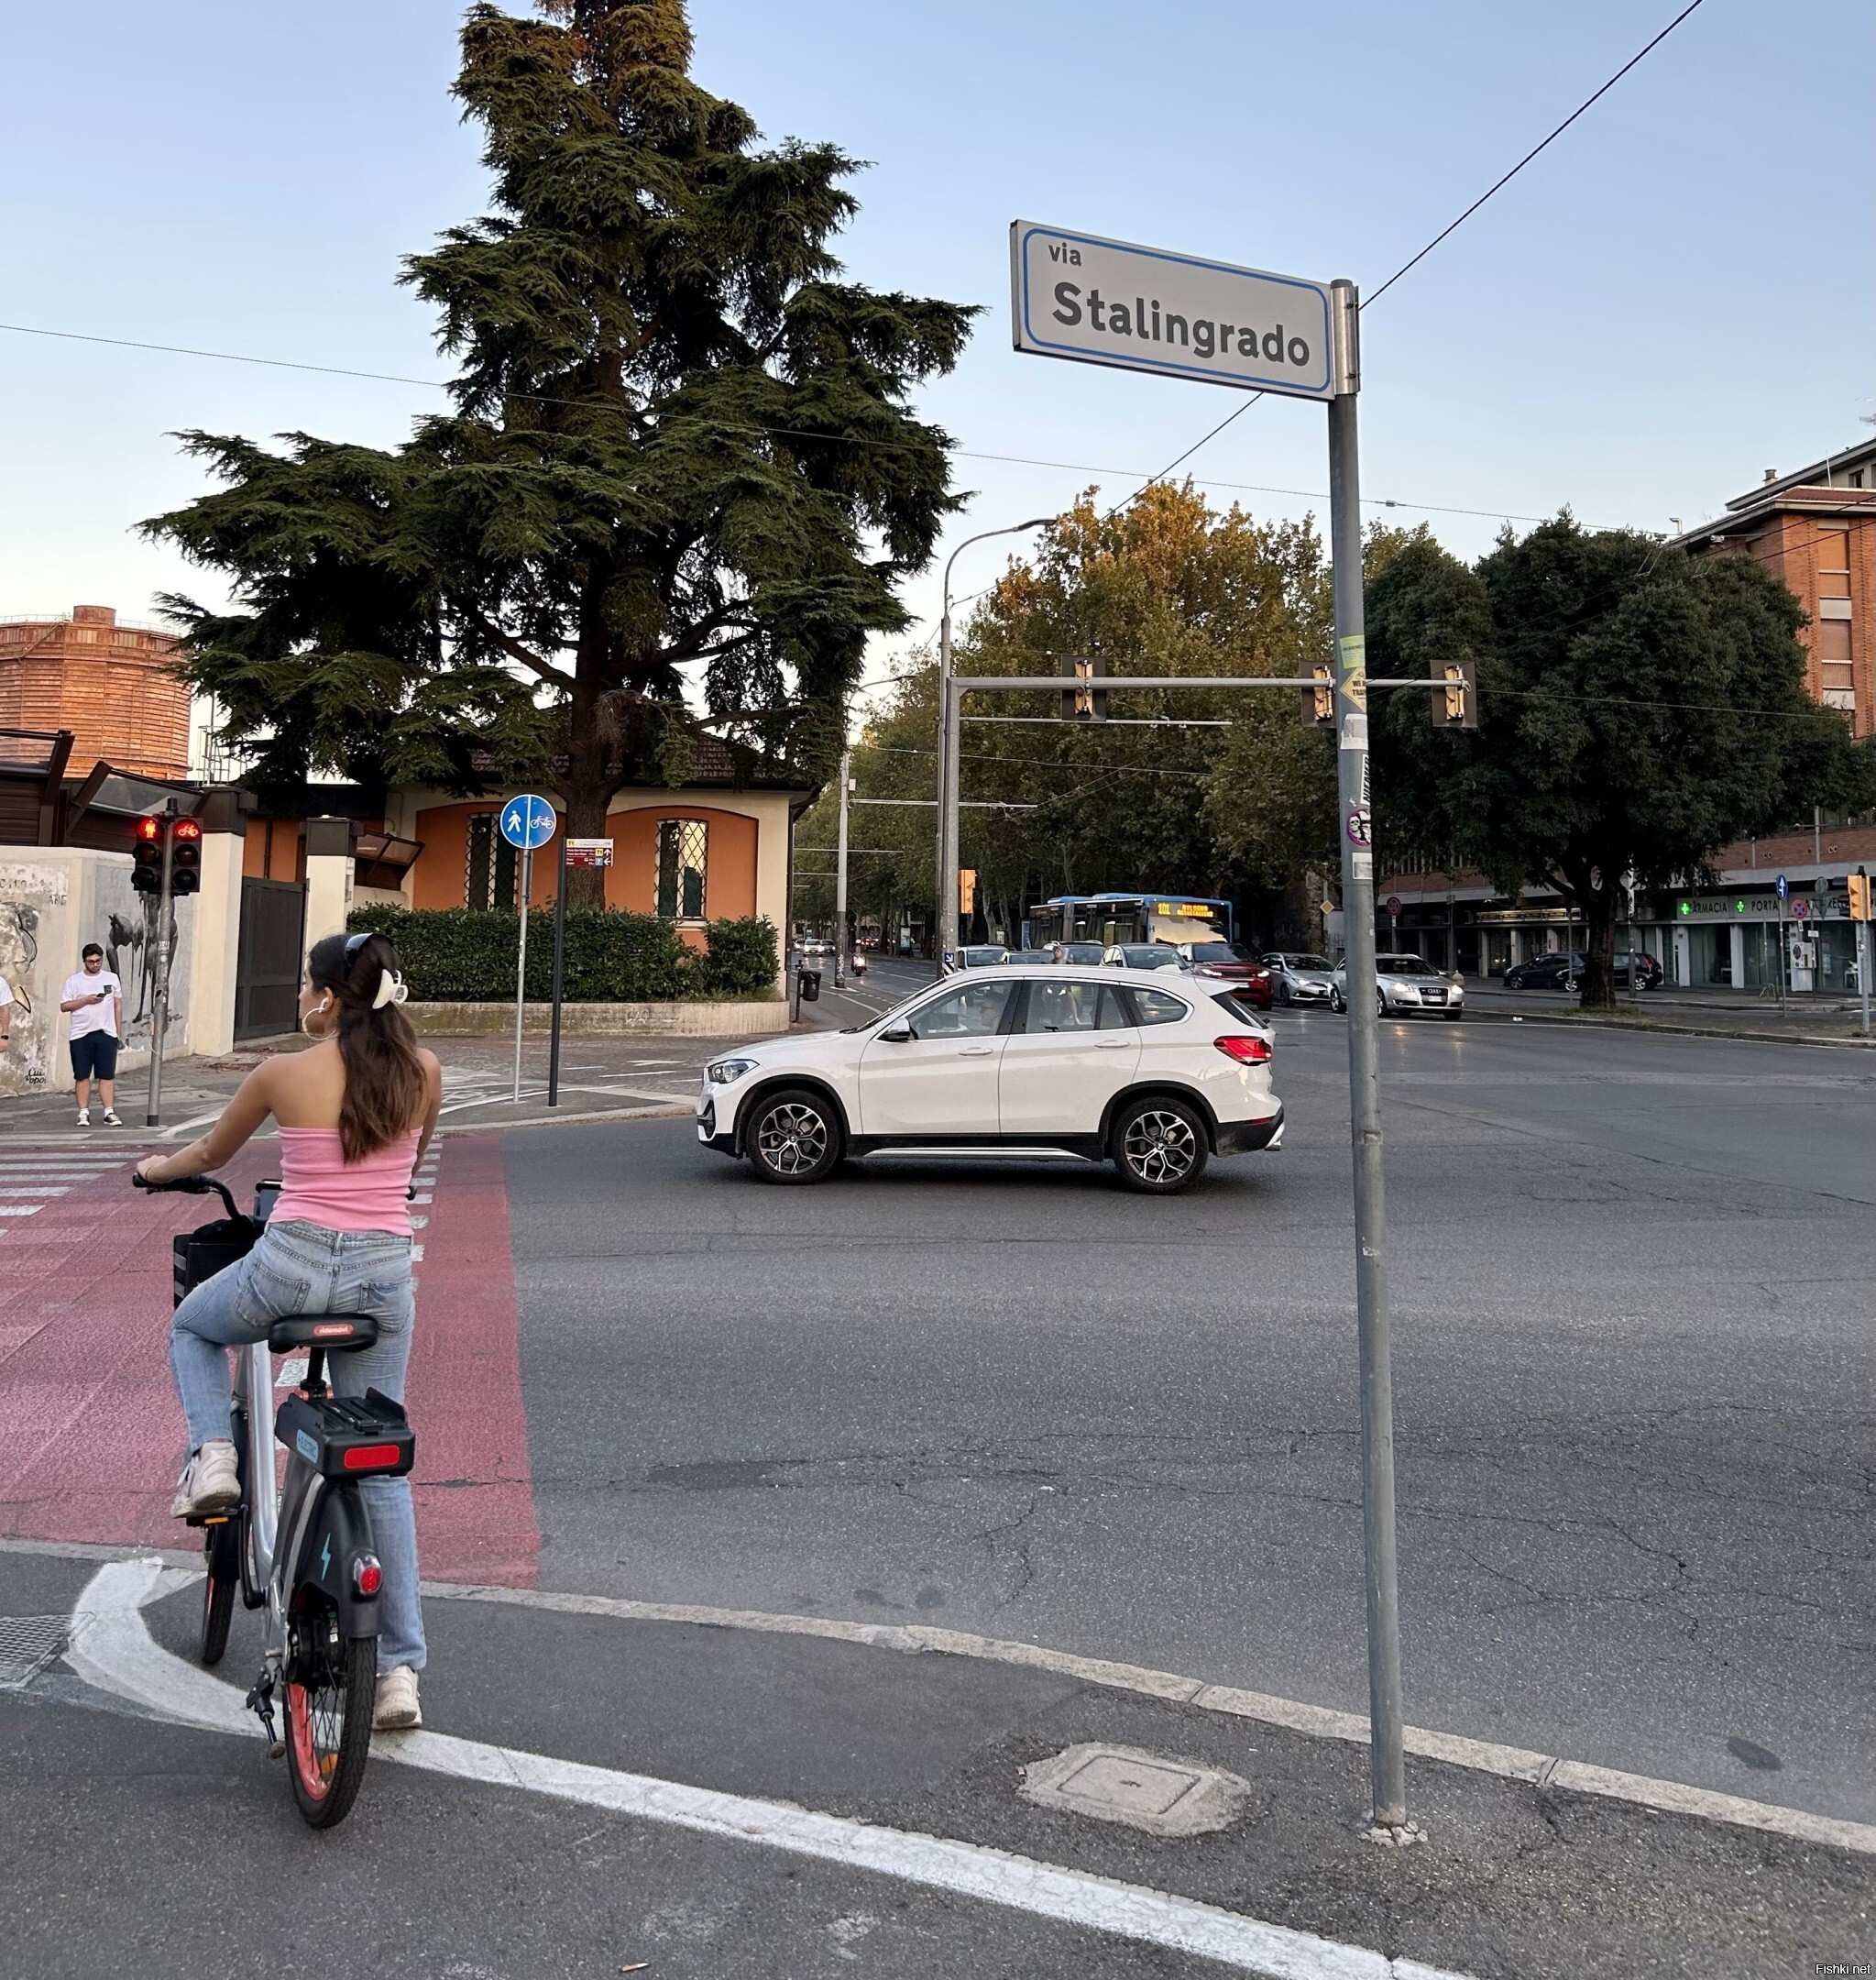 Via Stalingrado - обычная улица в Италии, Болонья